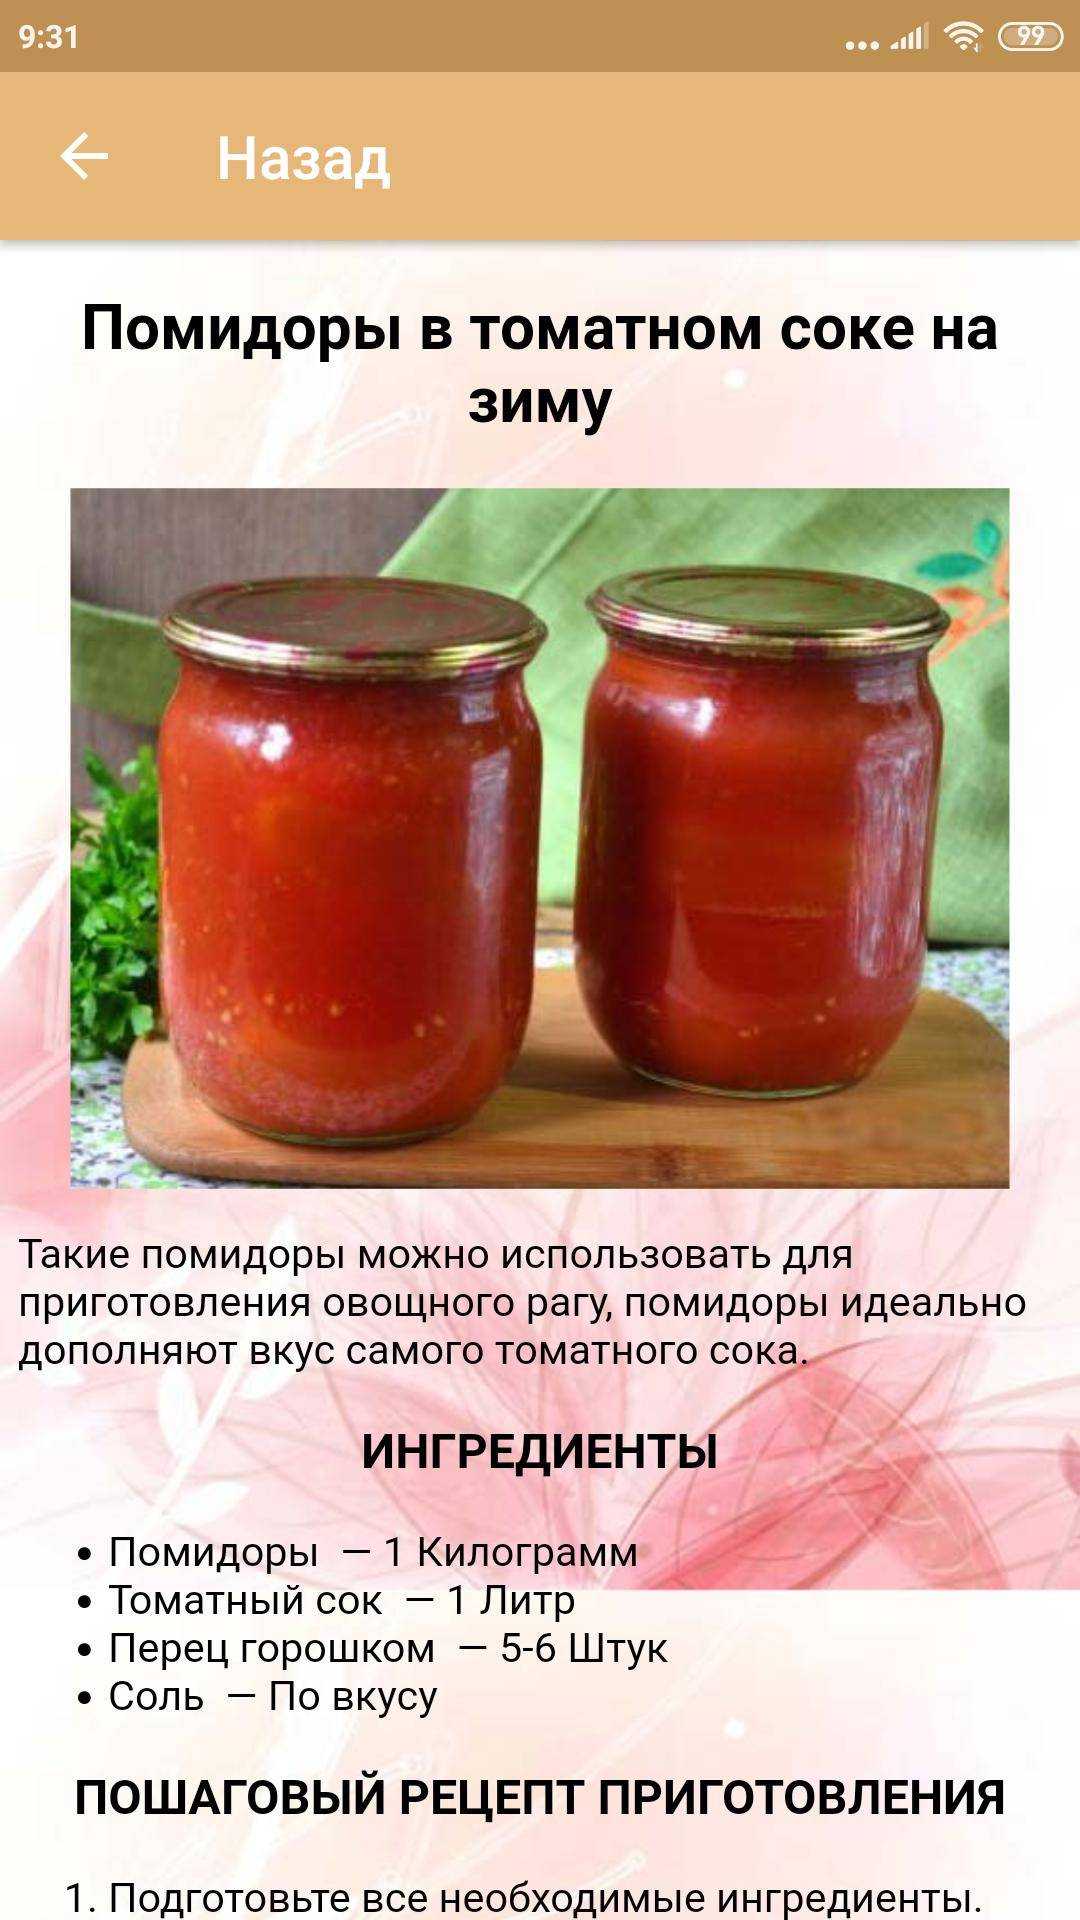 Приготовление томатного сока на зиму. Рецепт консервирования. Простые рецепты консервирования. Консервирование томатов рецепты. Помидоры консервированные в томатном соке.